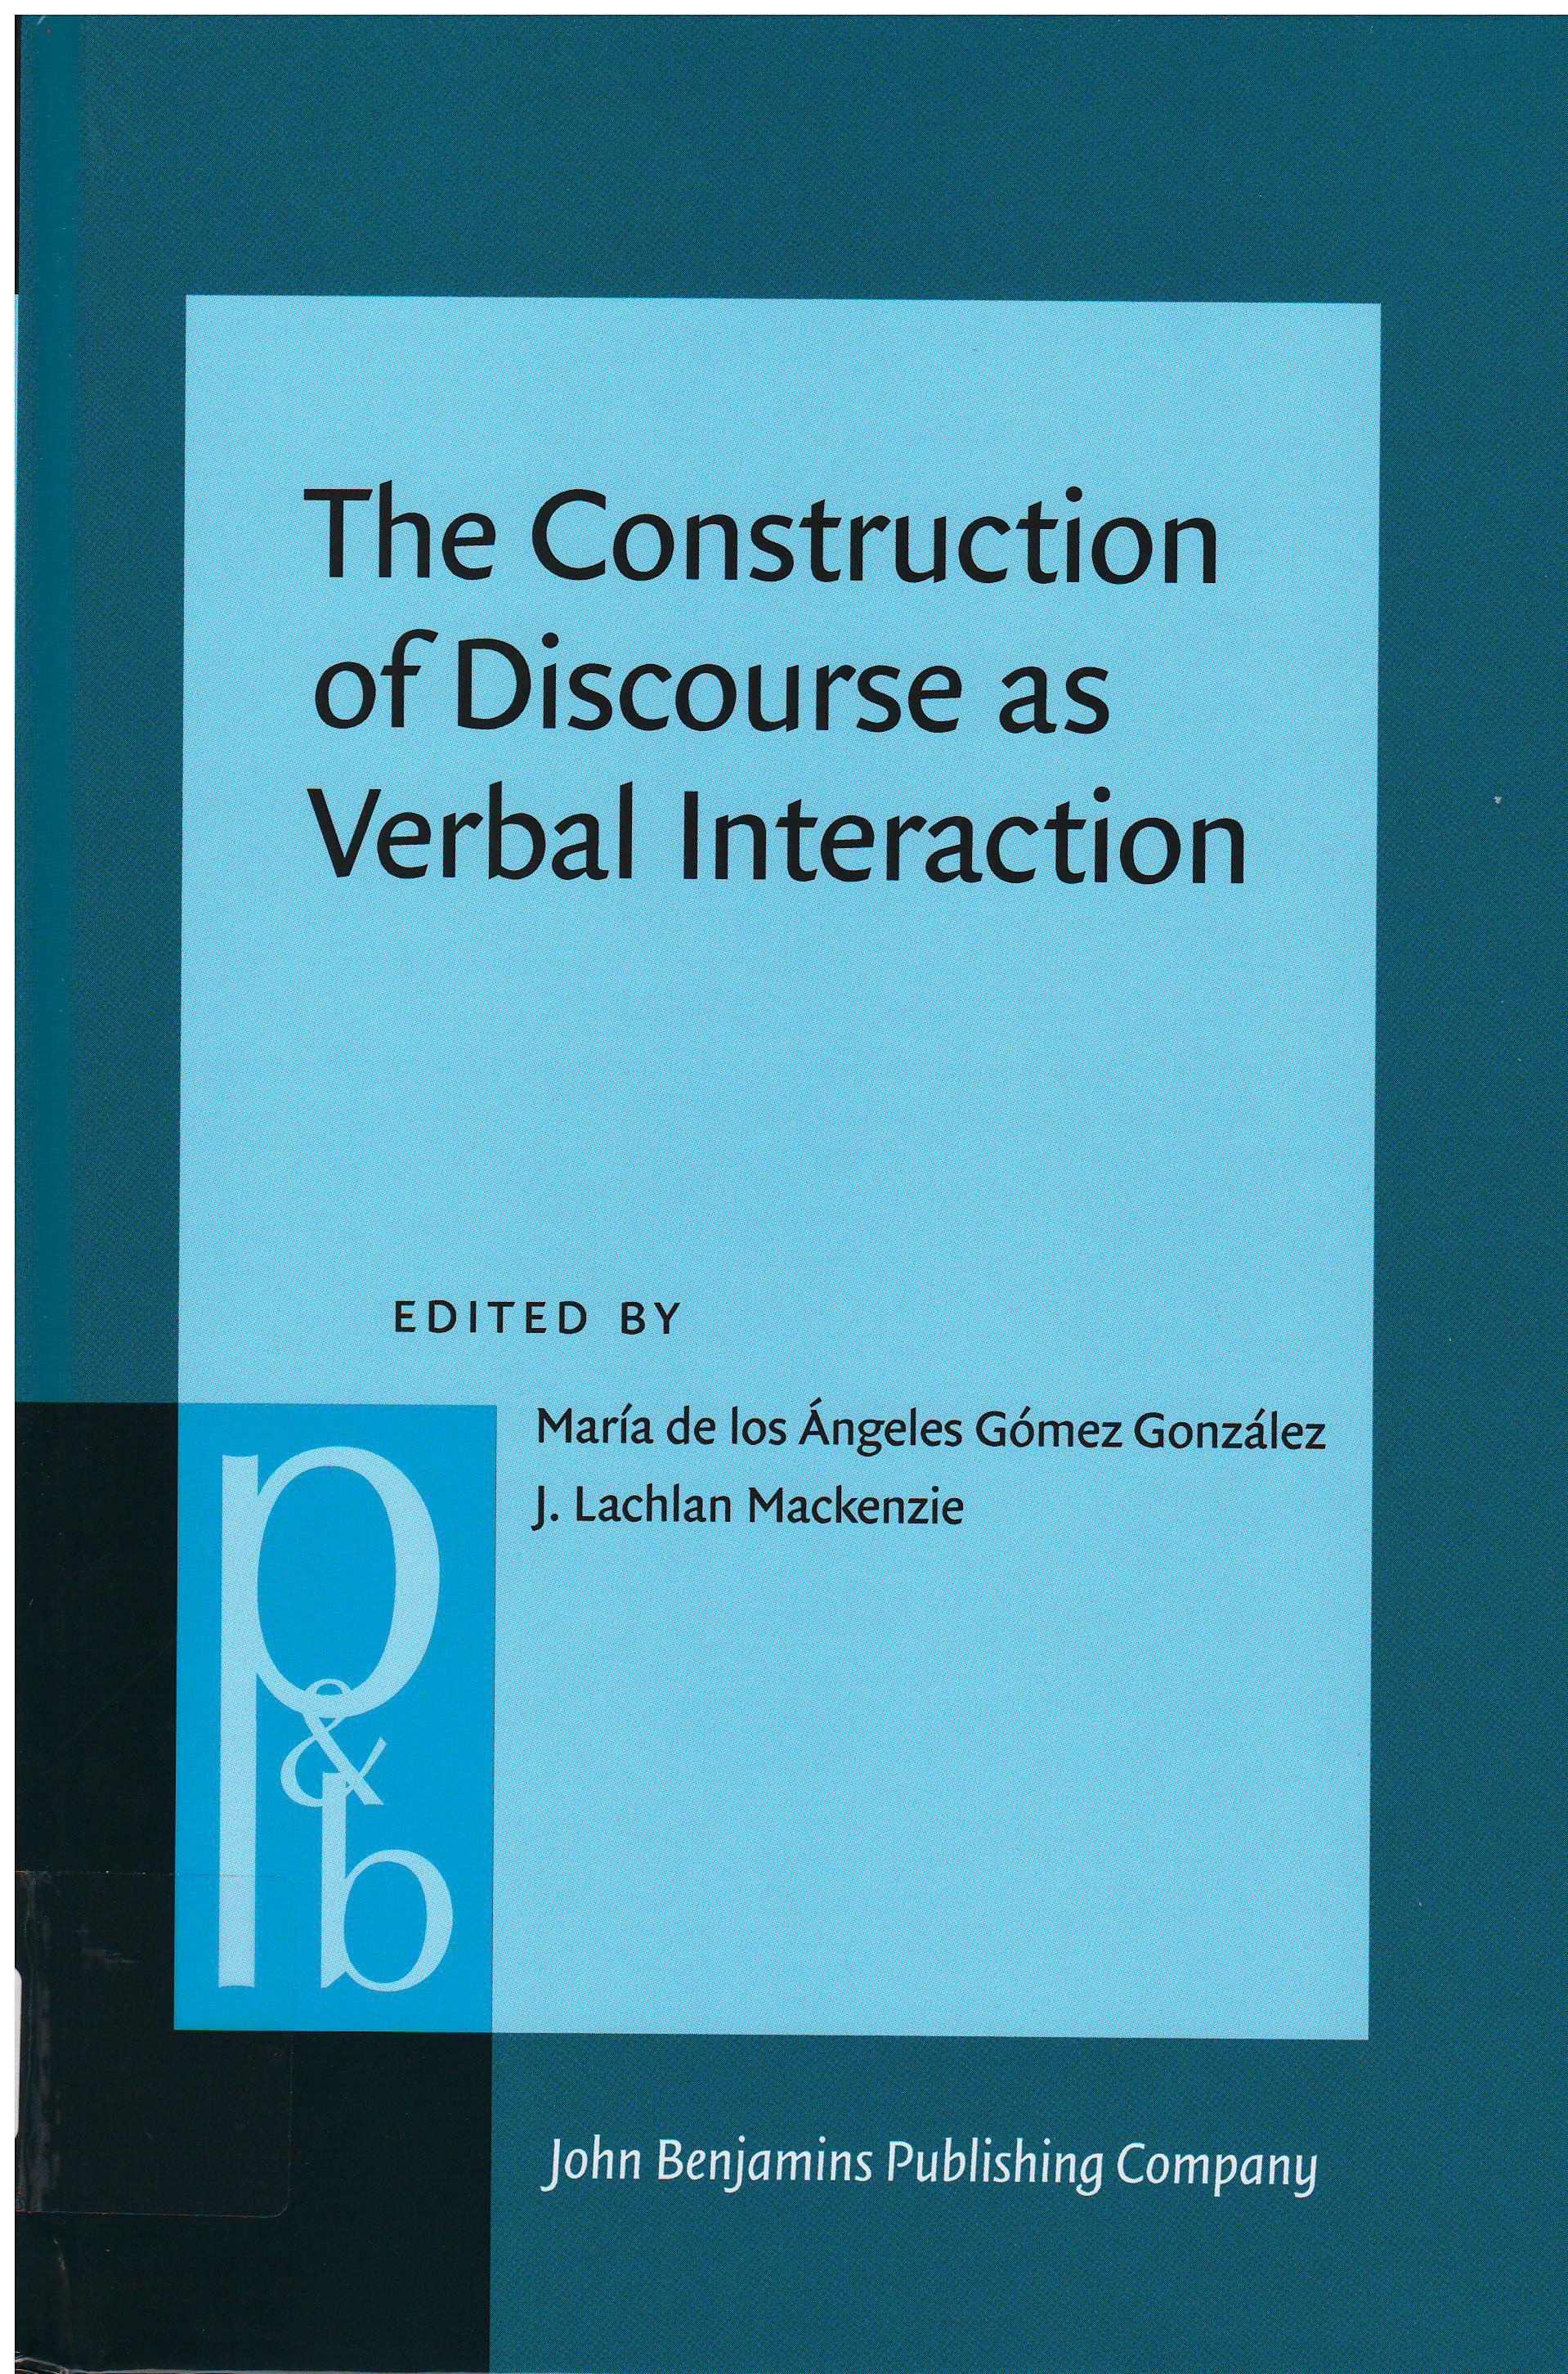 Imagen de portada del libro The Construction of Discourse as Verbal Interaction